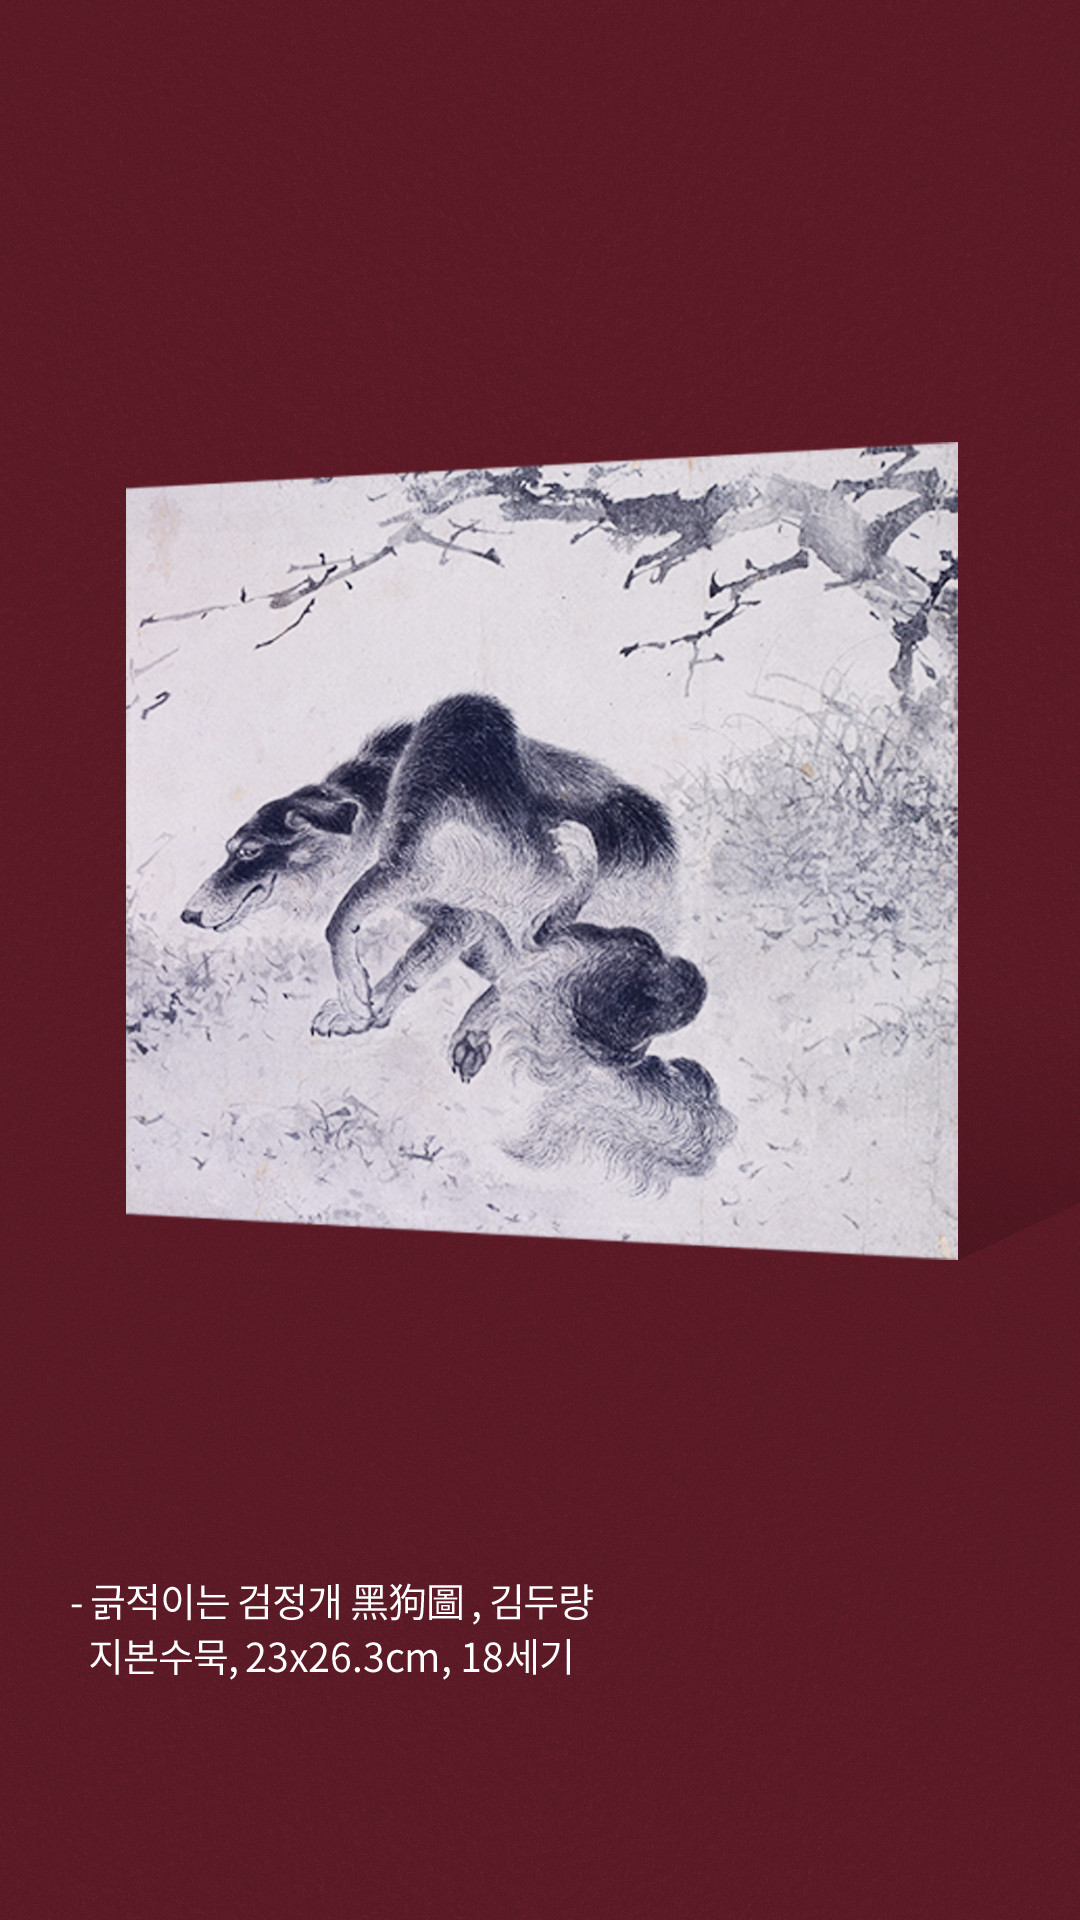 긁적이는 검정개 黑狗圖 , 김두량 지본수묵, 23x26.3cm, 18세기